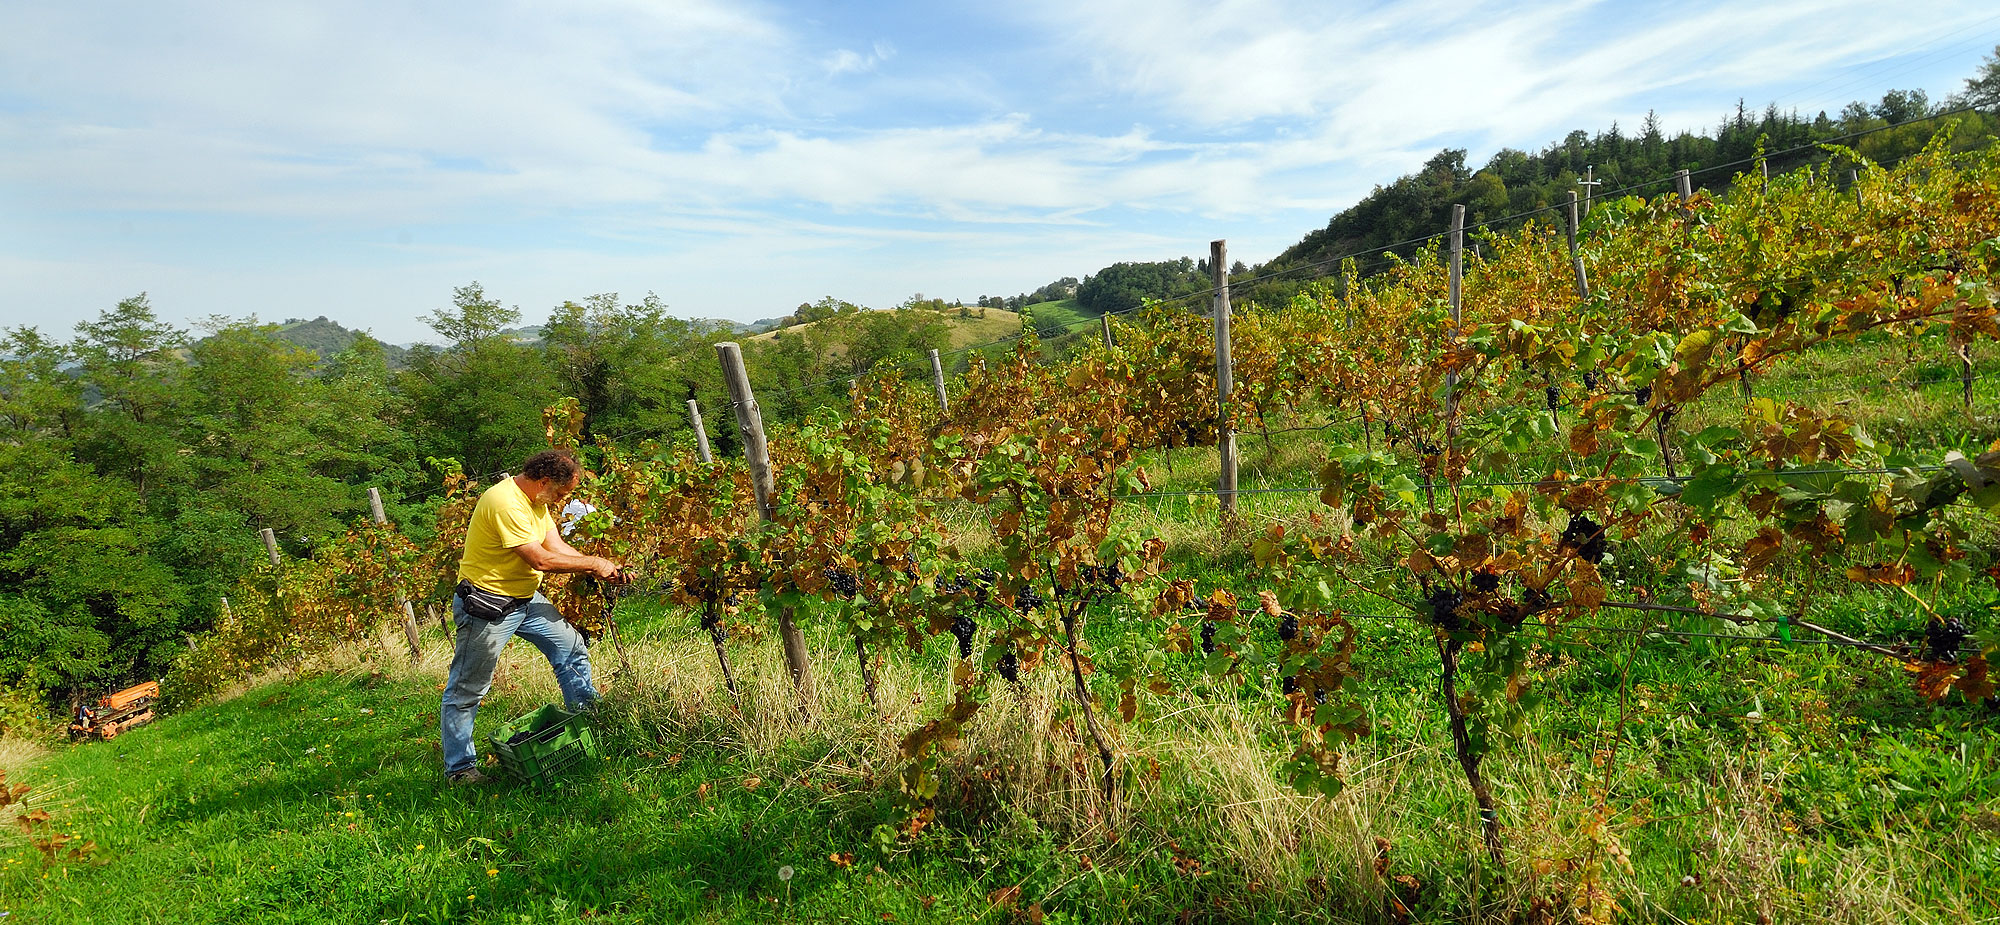 Escursione termica che regala al frutto della vite profumi intensi e persistenti che caratterizzano il vino prodotto.